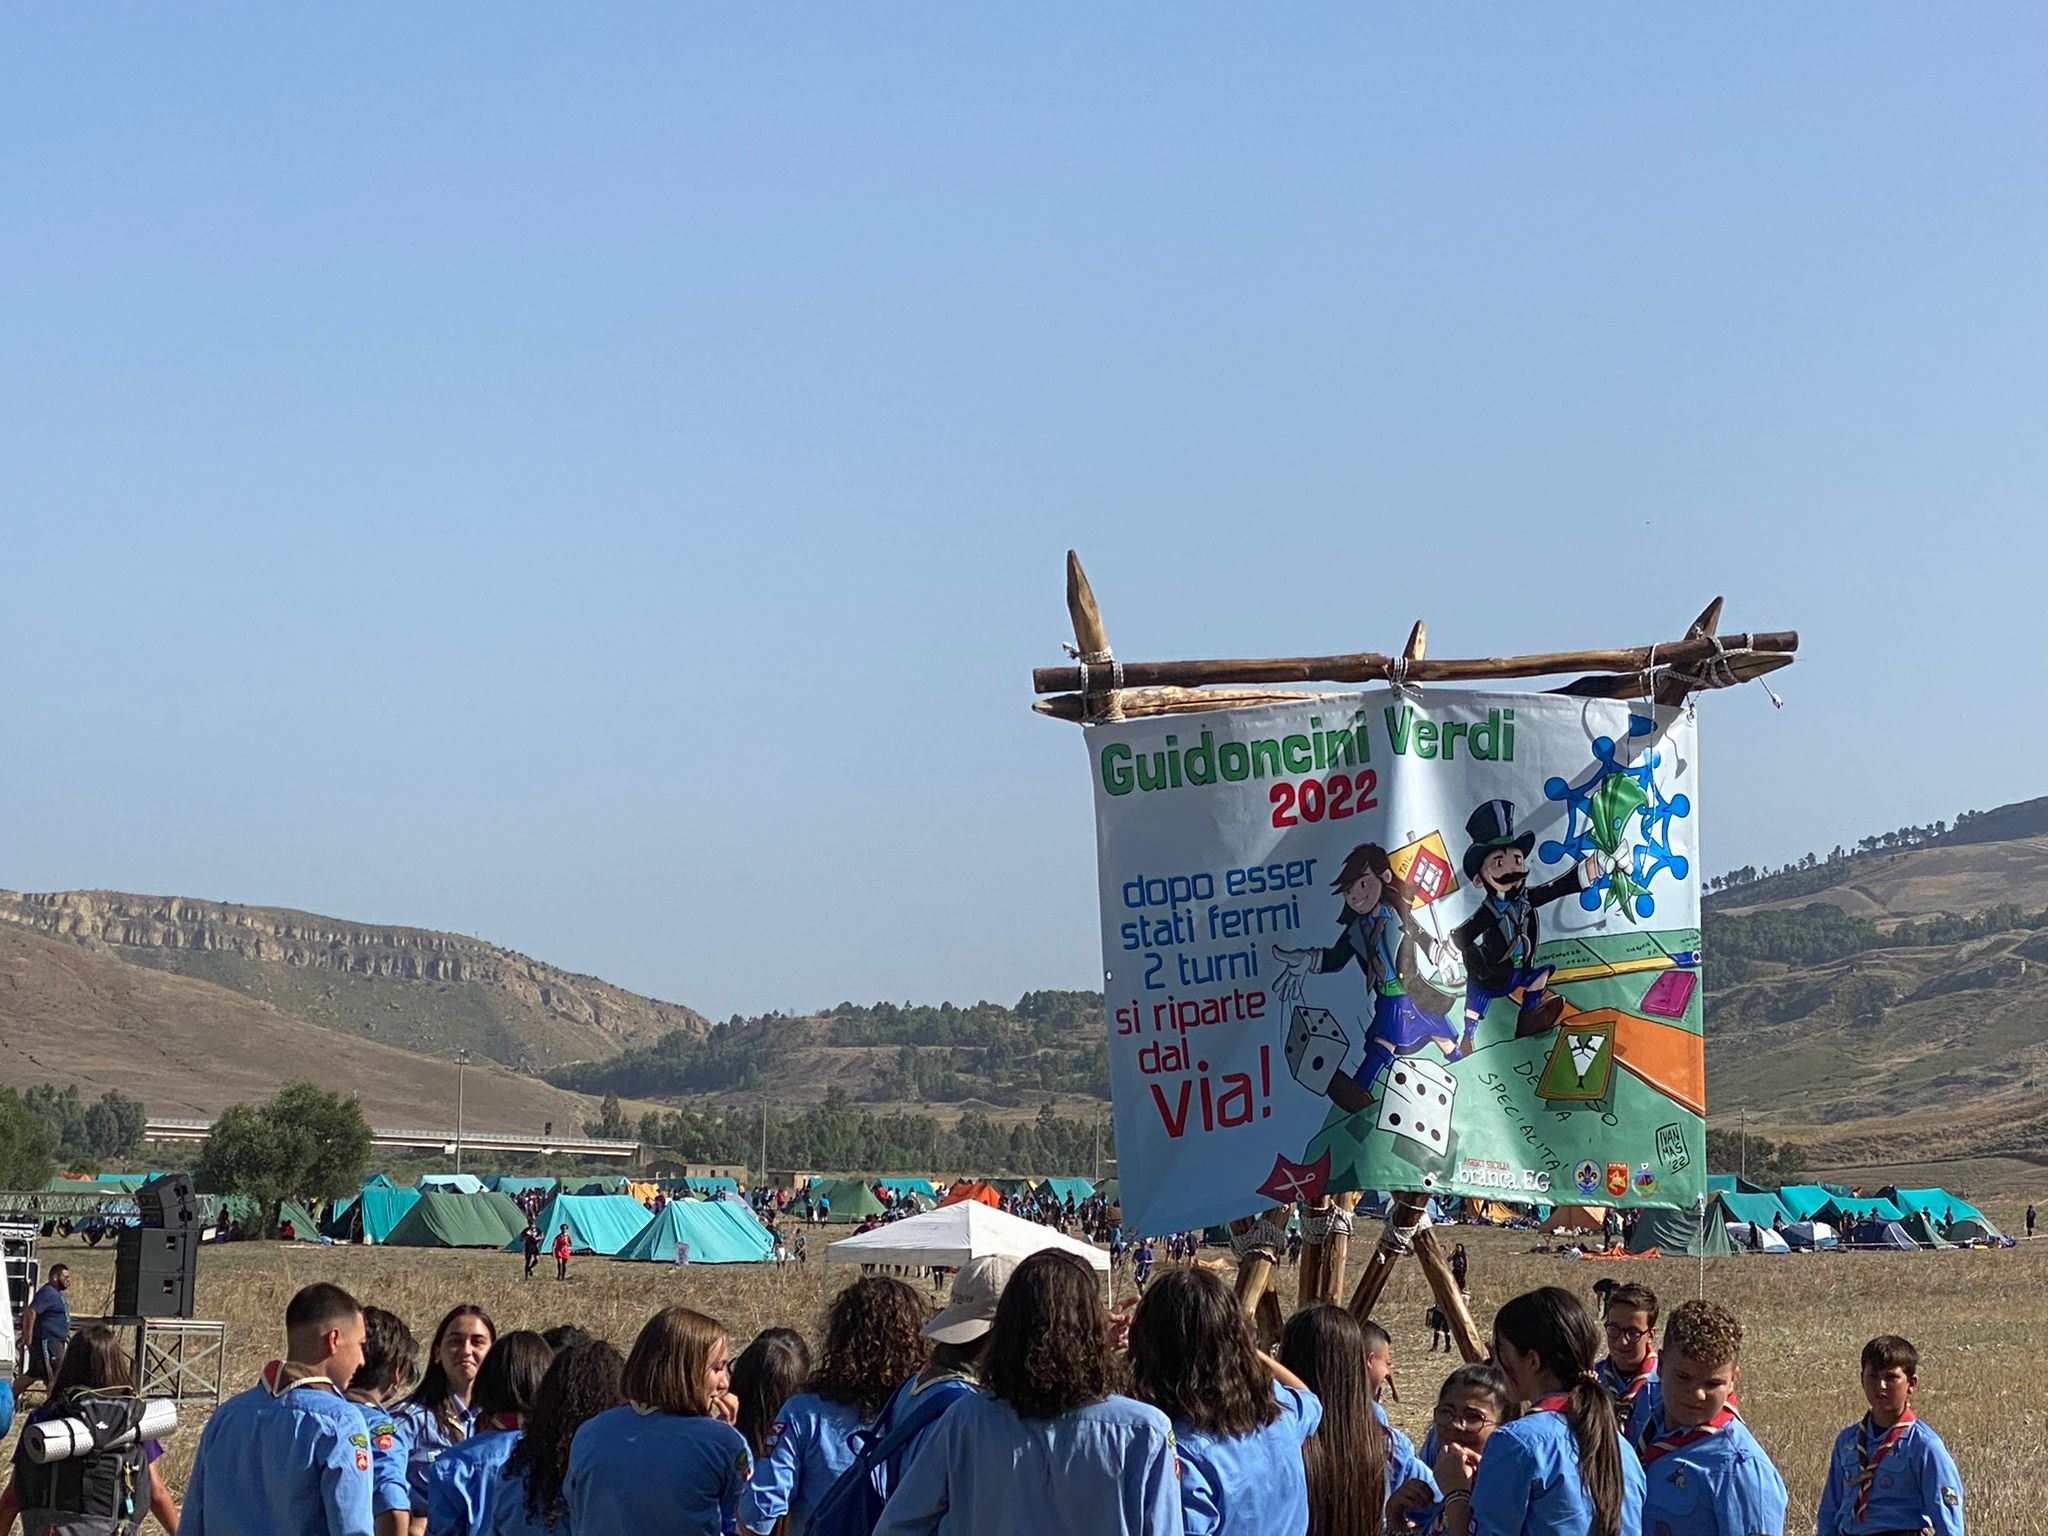 A Caltanissetta scoutismo con 1400 giovani provenienti da tutta la Sicilia protagonisti dell’evento “Guidoncini Verdi”